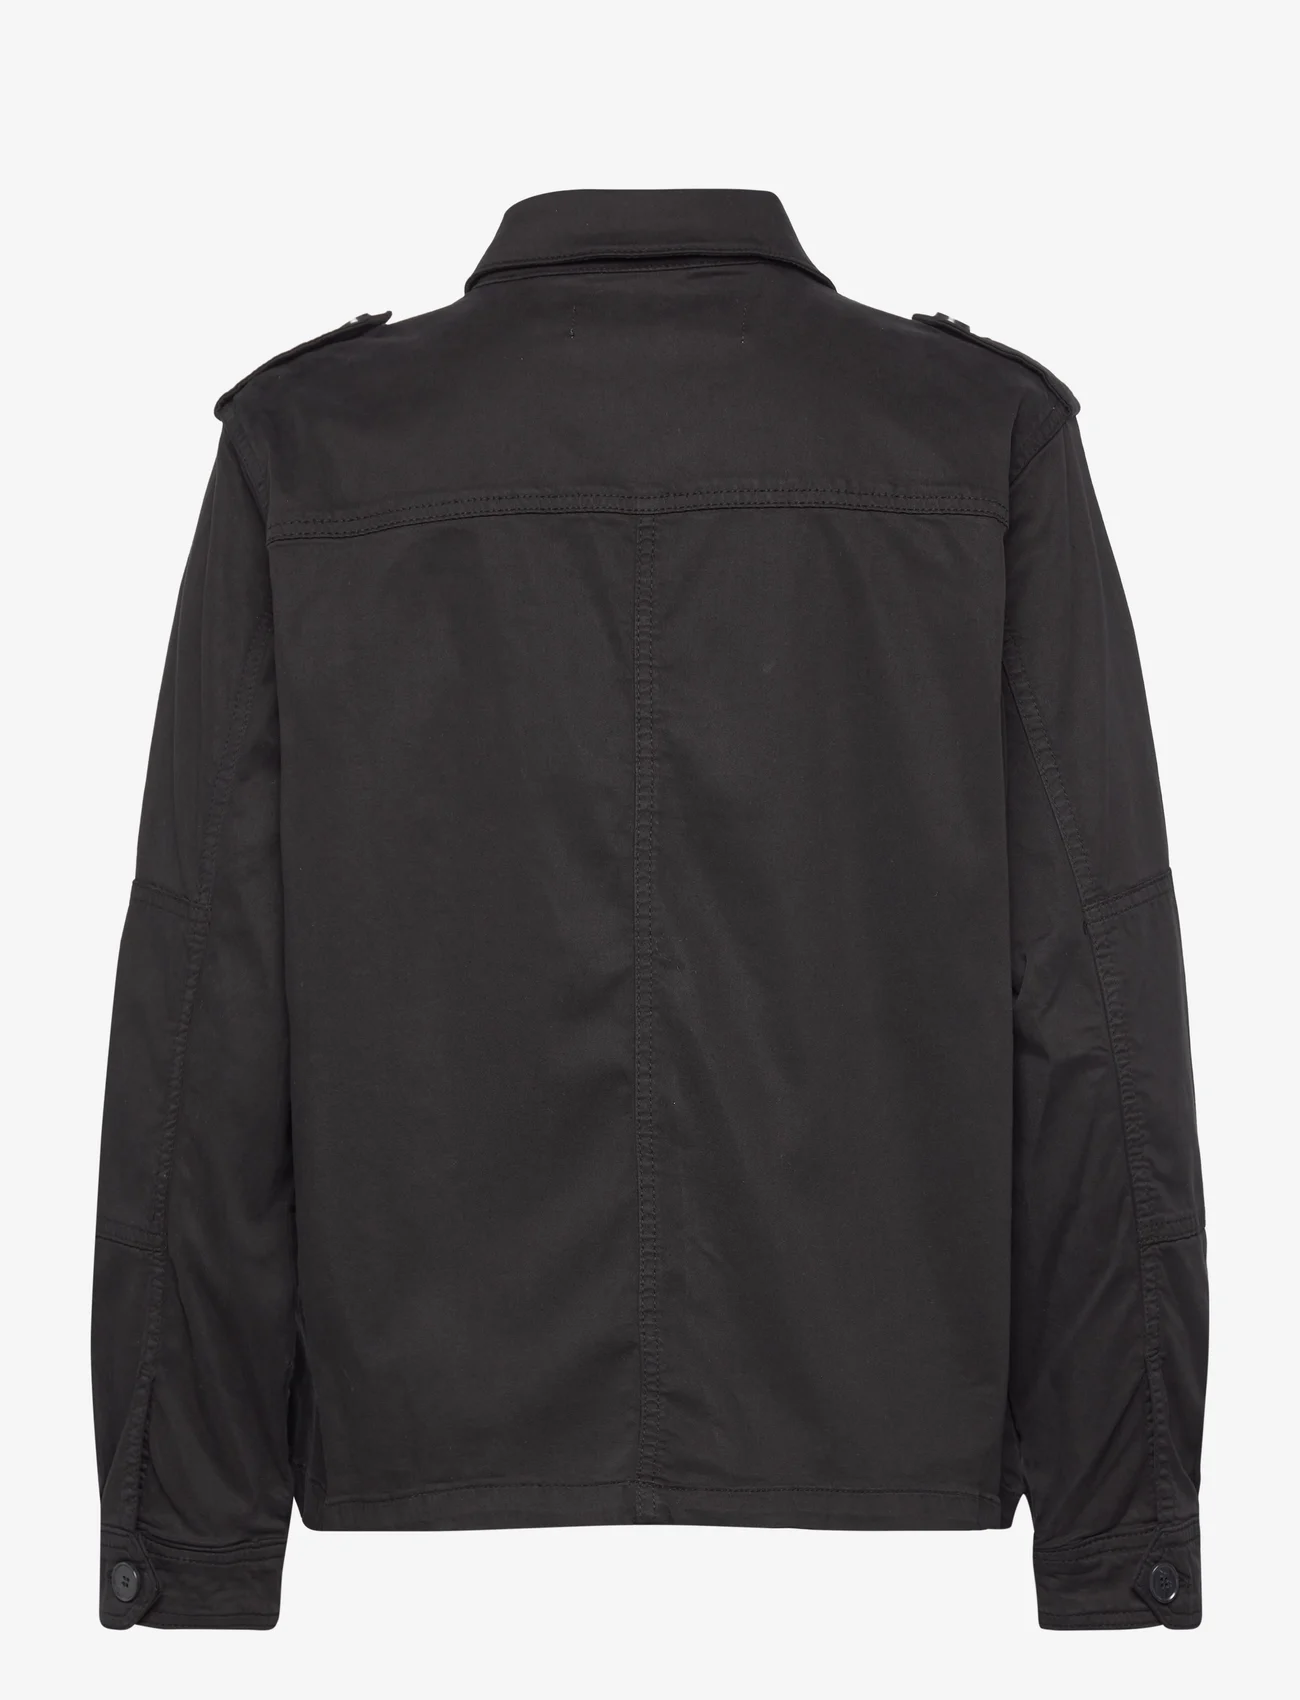 Pieszak - PD-New Gigi Combat Jacket - utility jackets - black - 1